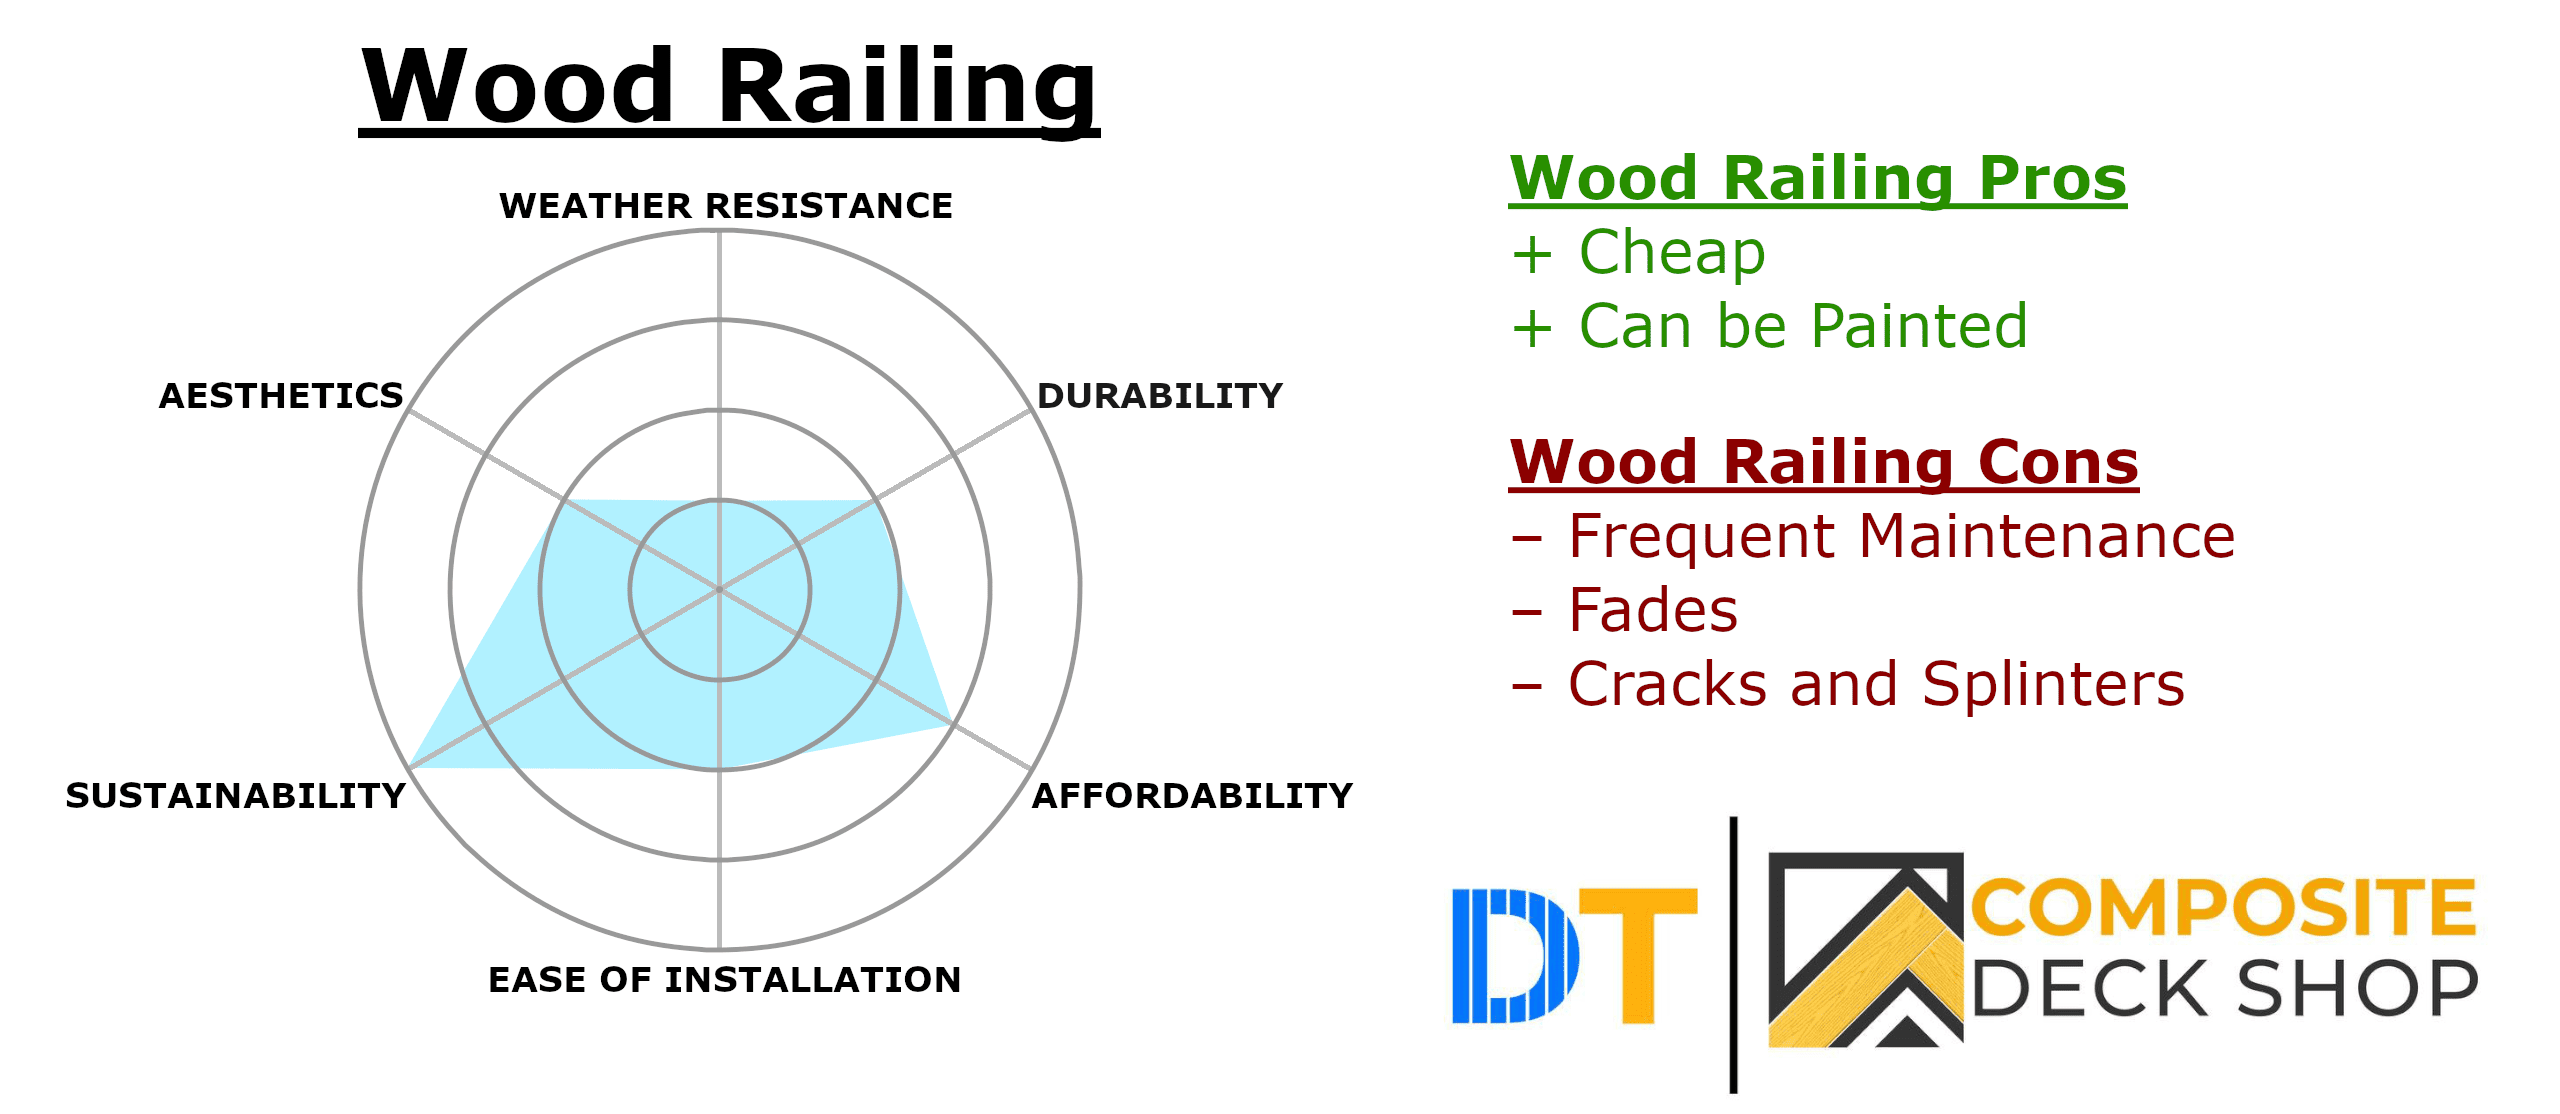 Wood Railing